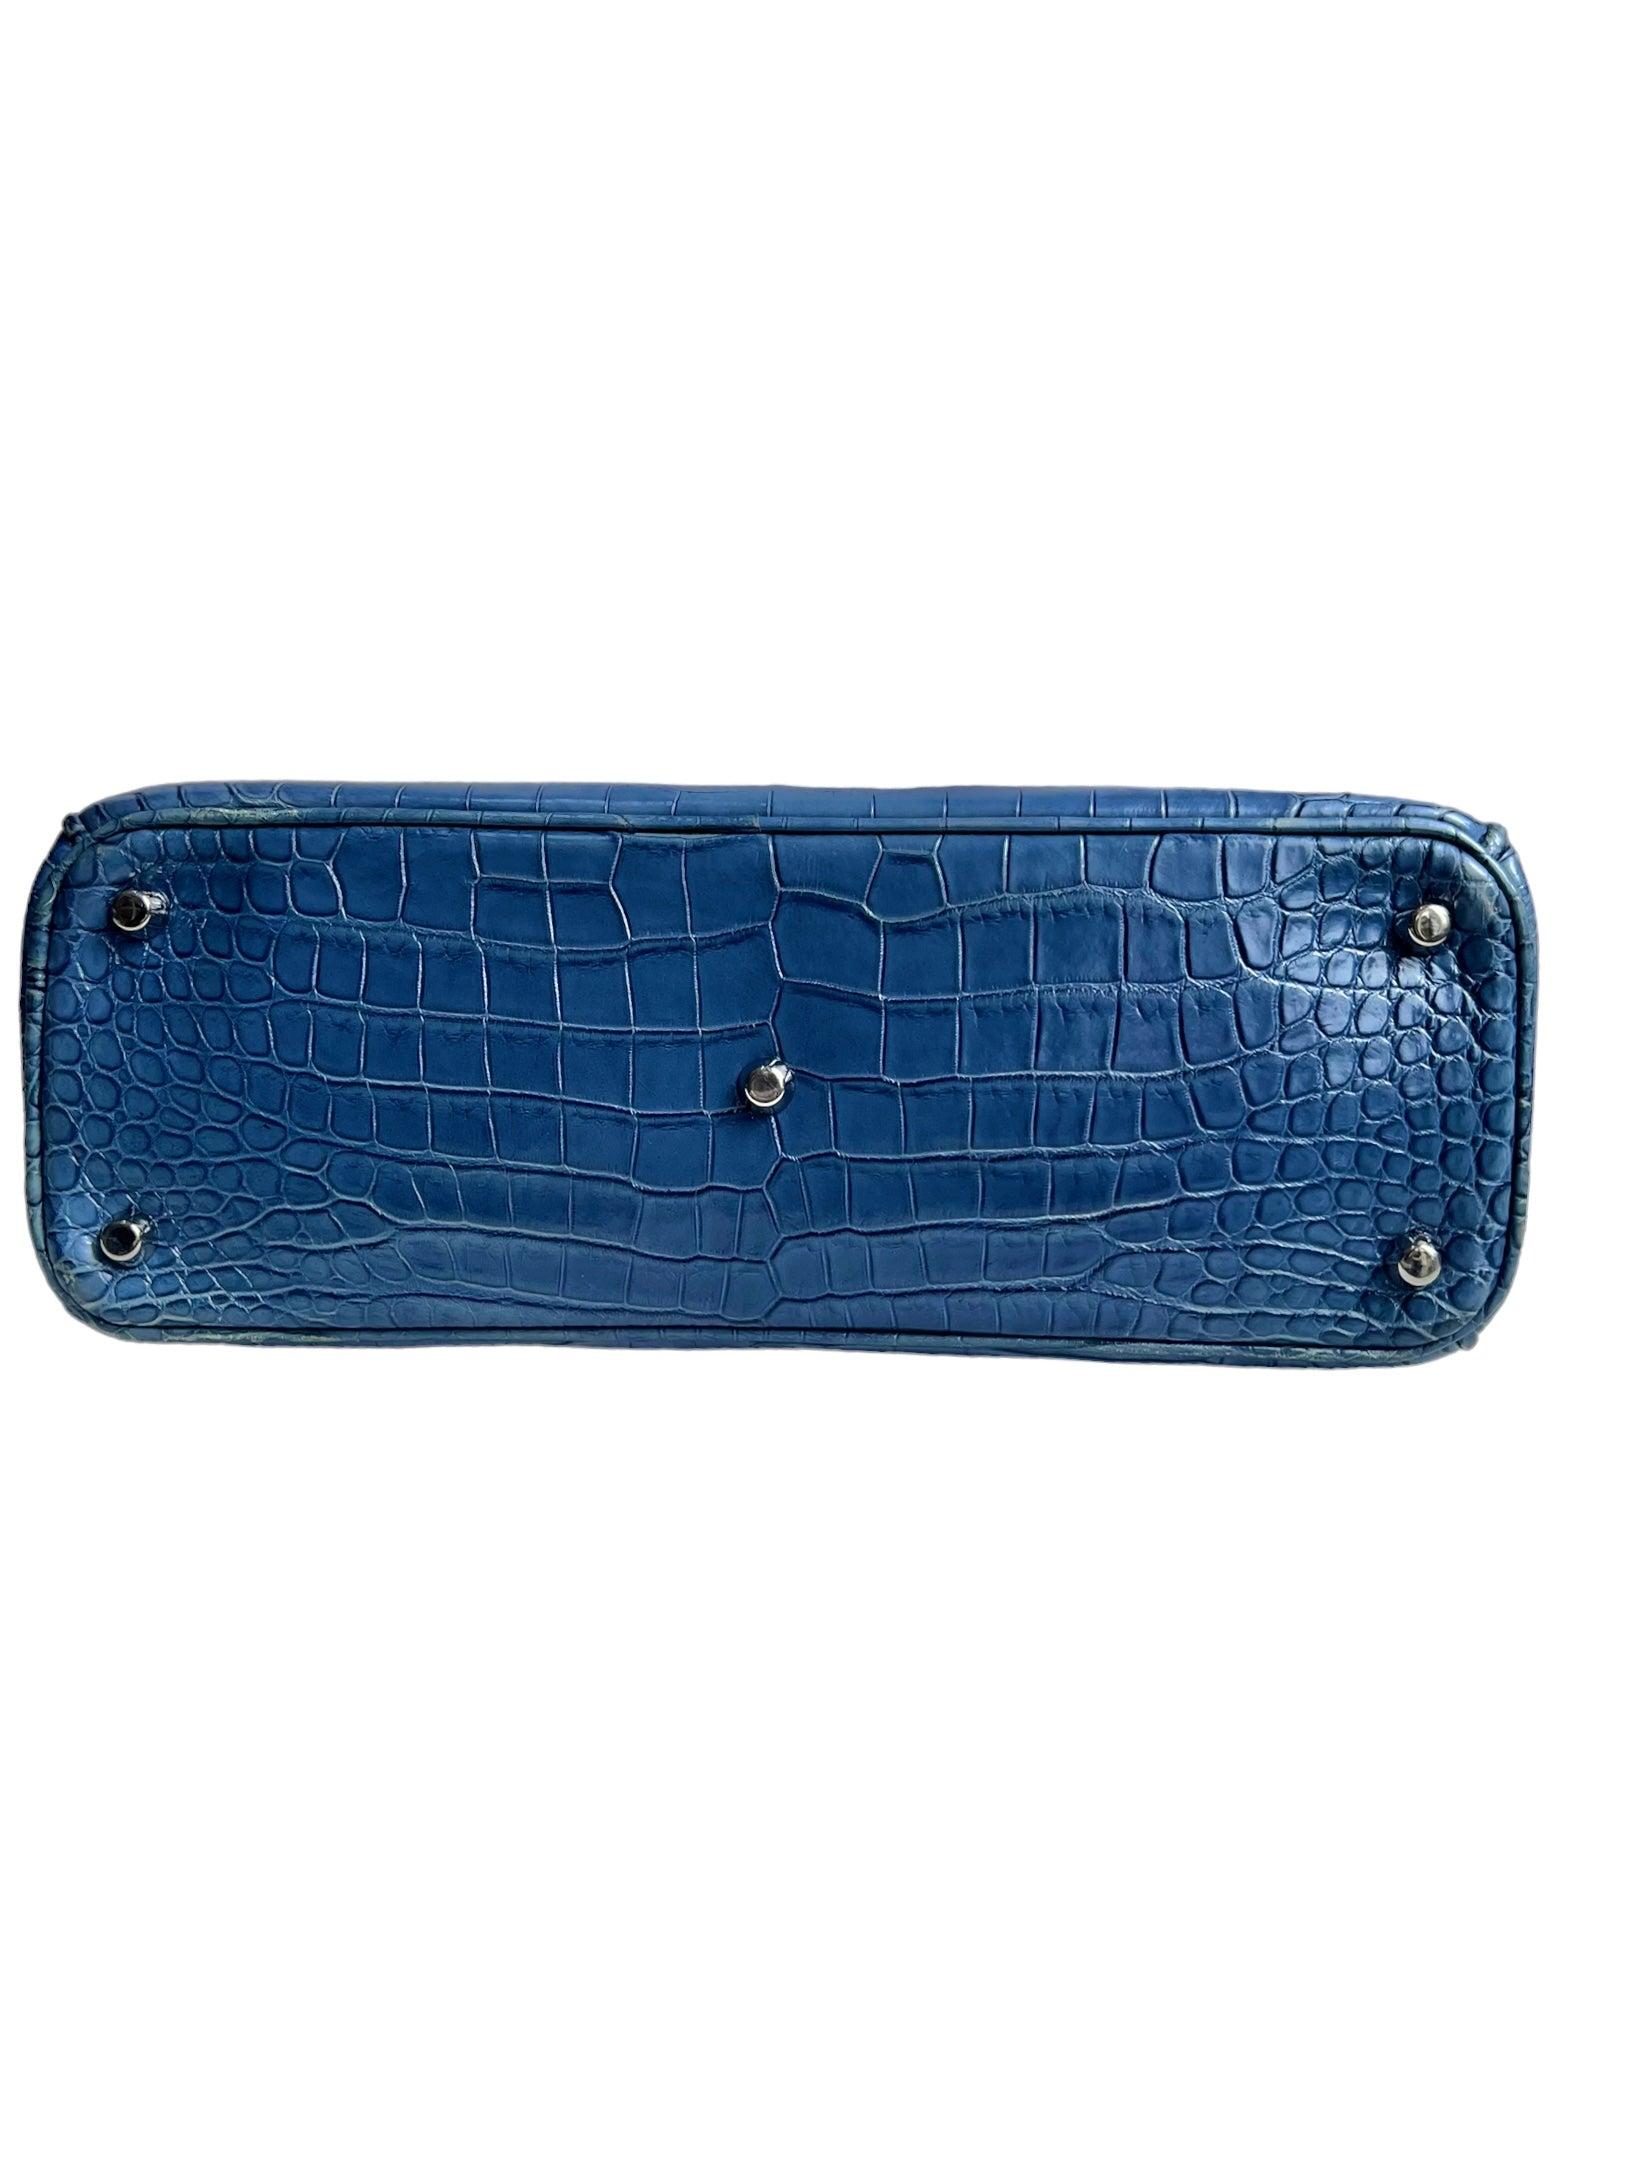 Christian Dior Diorissimo Ombre Crocodile Tote Medium Bag For Sale 5